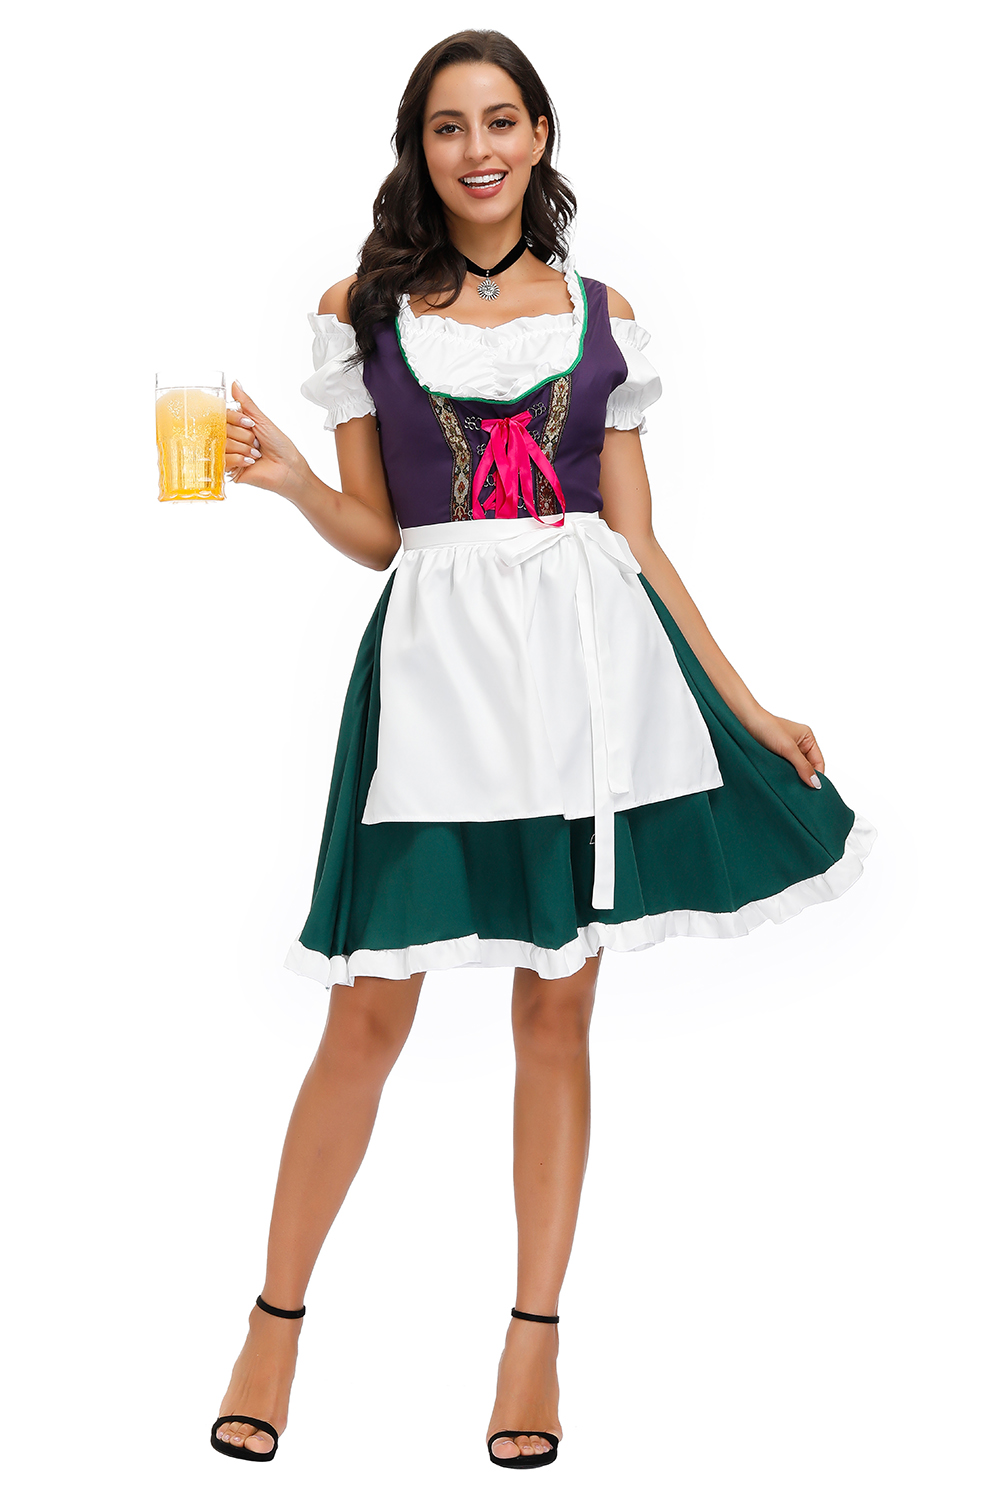 Bavarian Beer Maid Adult Costume